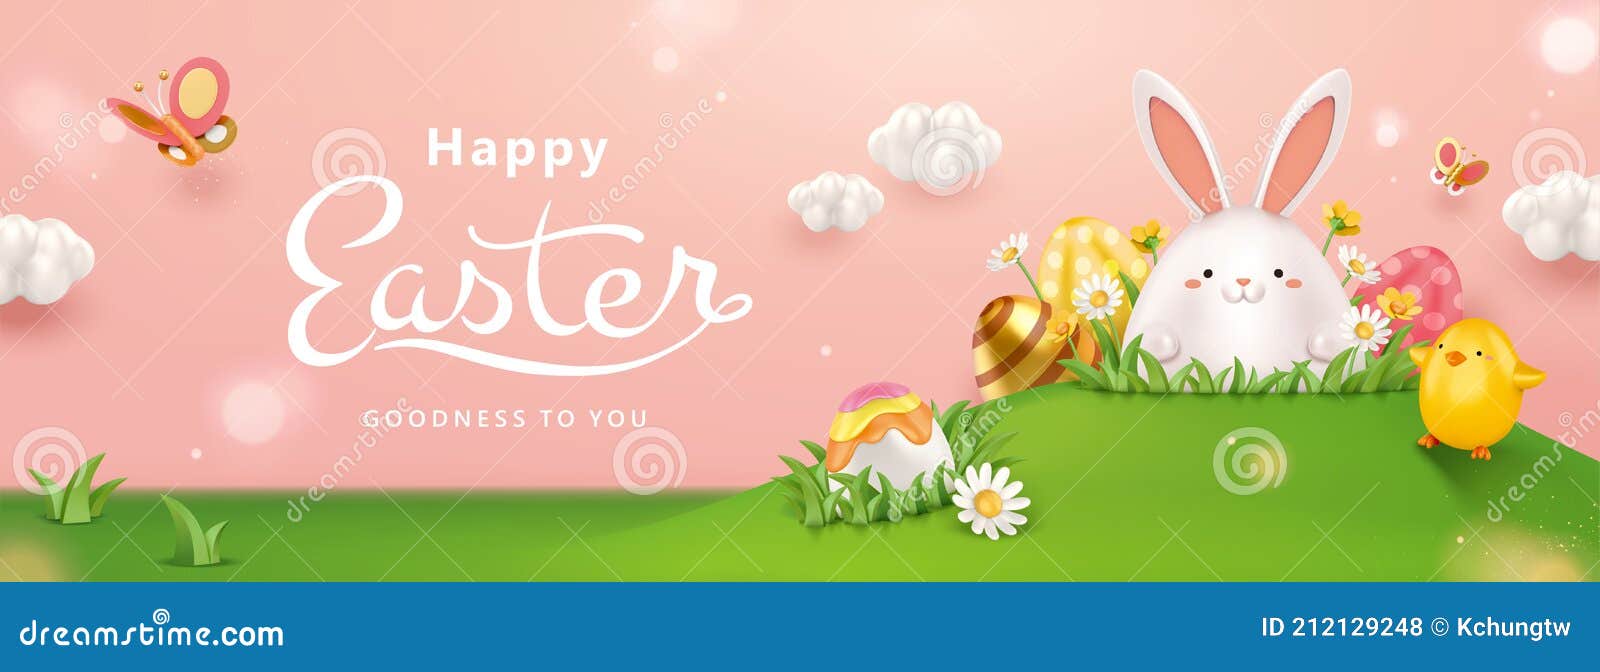 3d Easter Egg Hunt Background Stock Vector Illustration Of Candy Celebration